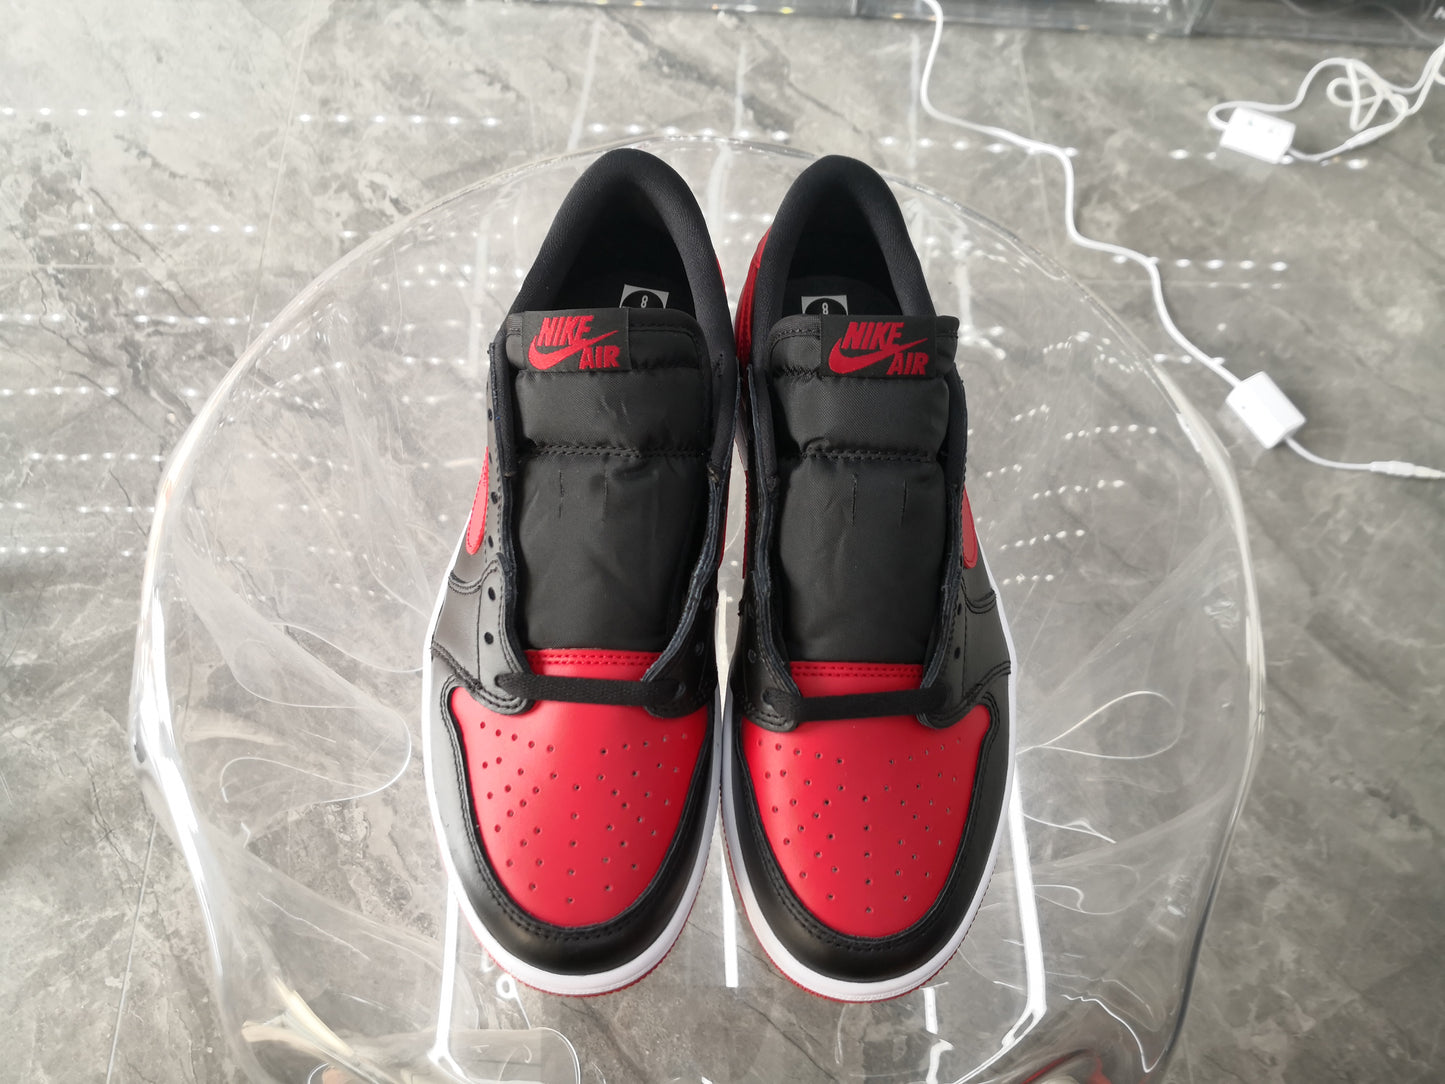 NIKE x AIR JORDAN - Nike Air Jordan 1 Low OG Bred Sneakers (2015)